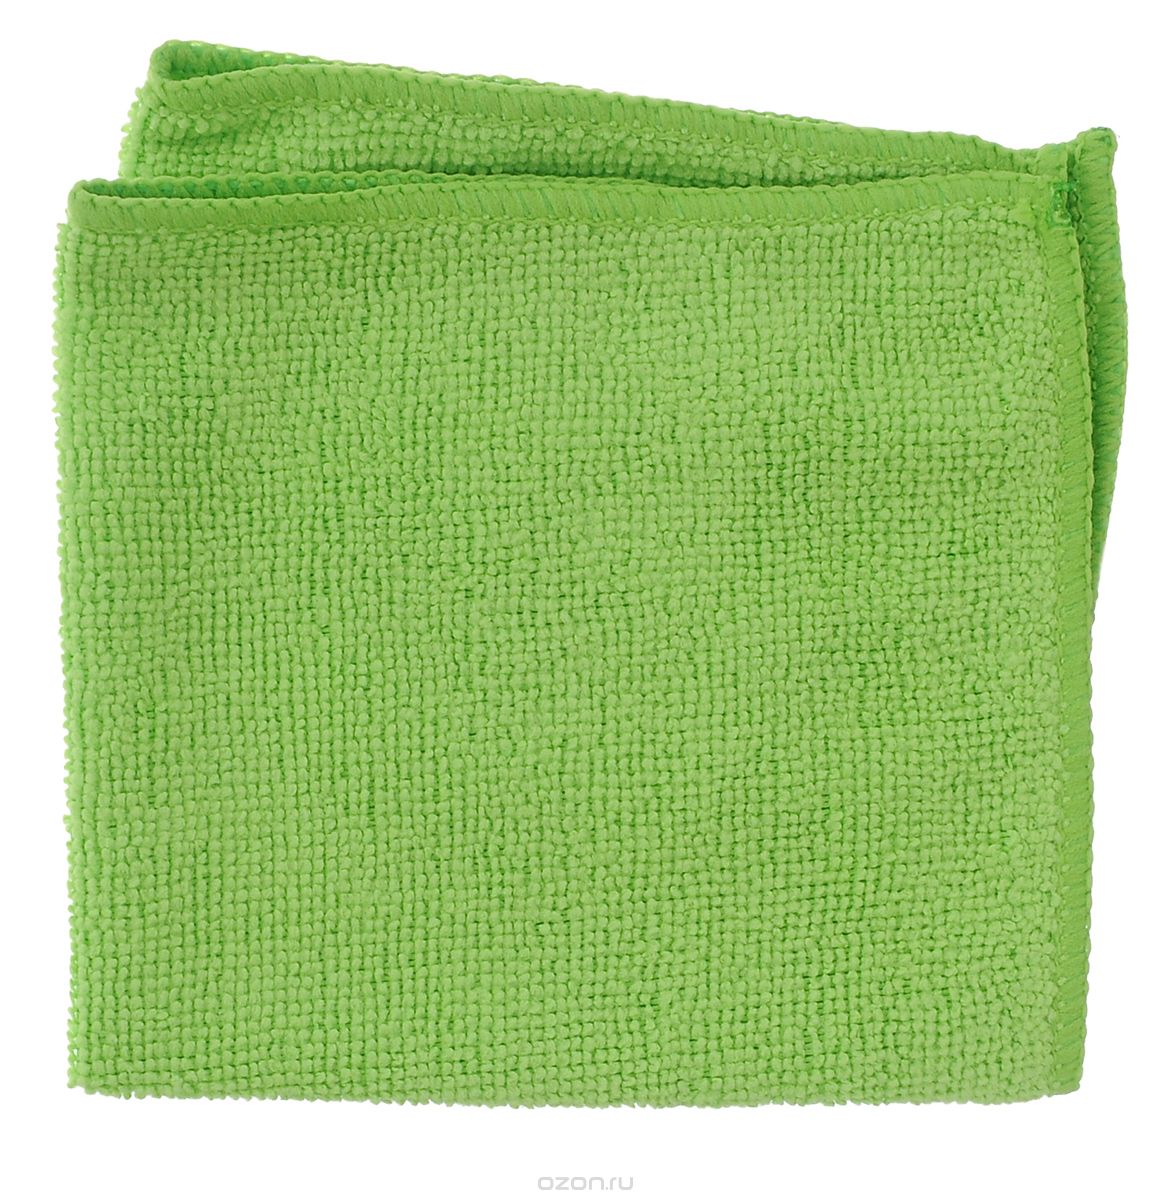 Салфетка Meiko микроволокно - HT, цвет зеленый